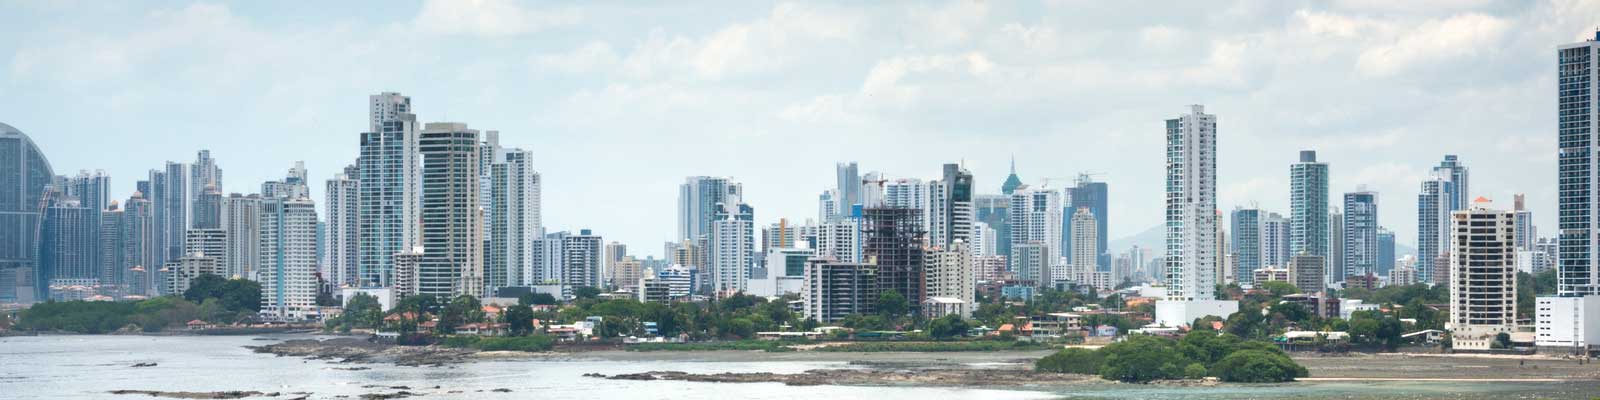 Panama Immobilien - Büros, Bauflächen, Hotels - Bauen, Investieren, Mieten